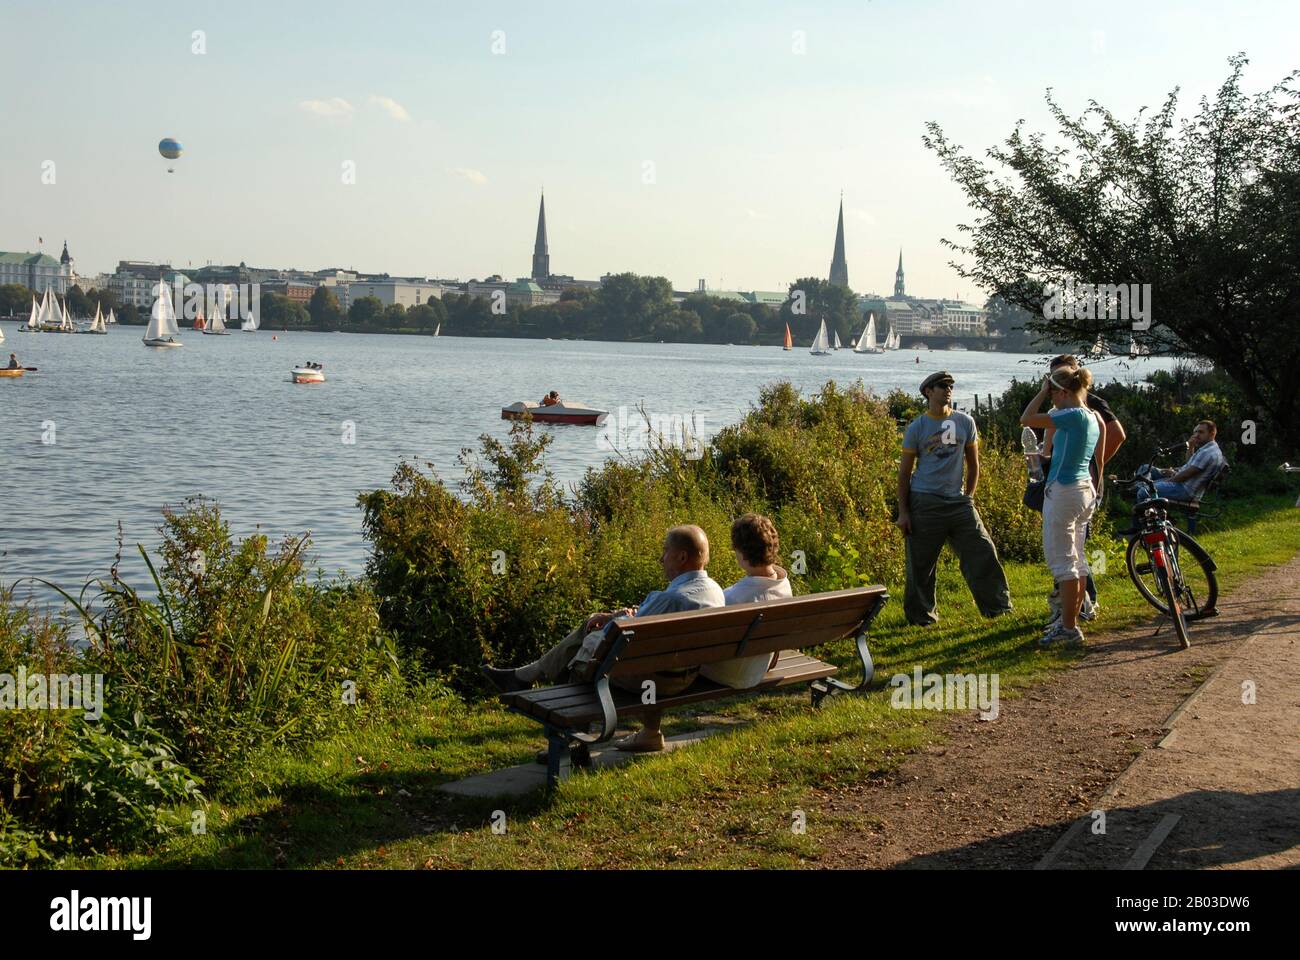 Besucher und Einheimische genießen die Sonne am Alsterinnensee im Zentrum Hamburgs, Norddeutschland. In der Ferne befindet sich ein Heißluftballon Stockfoto